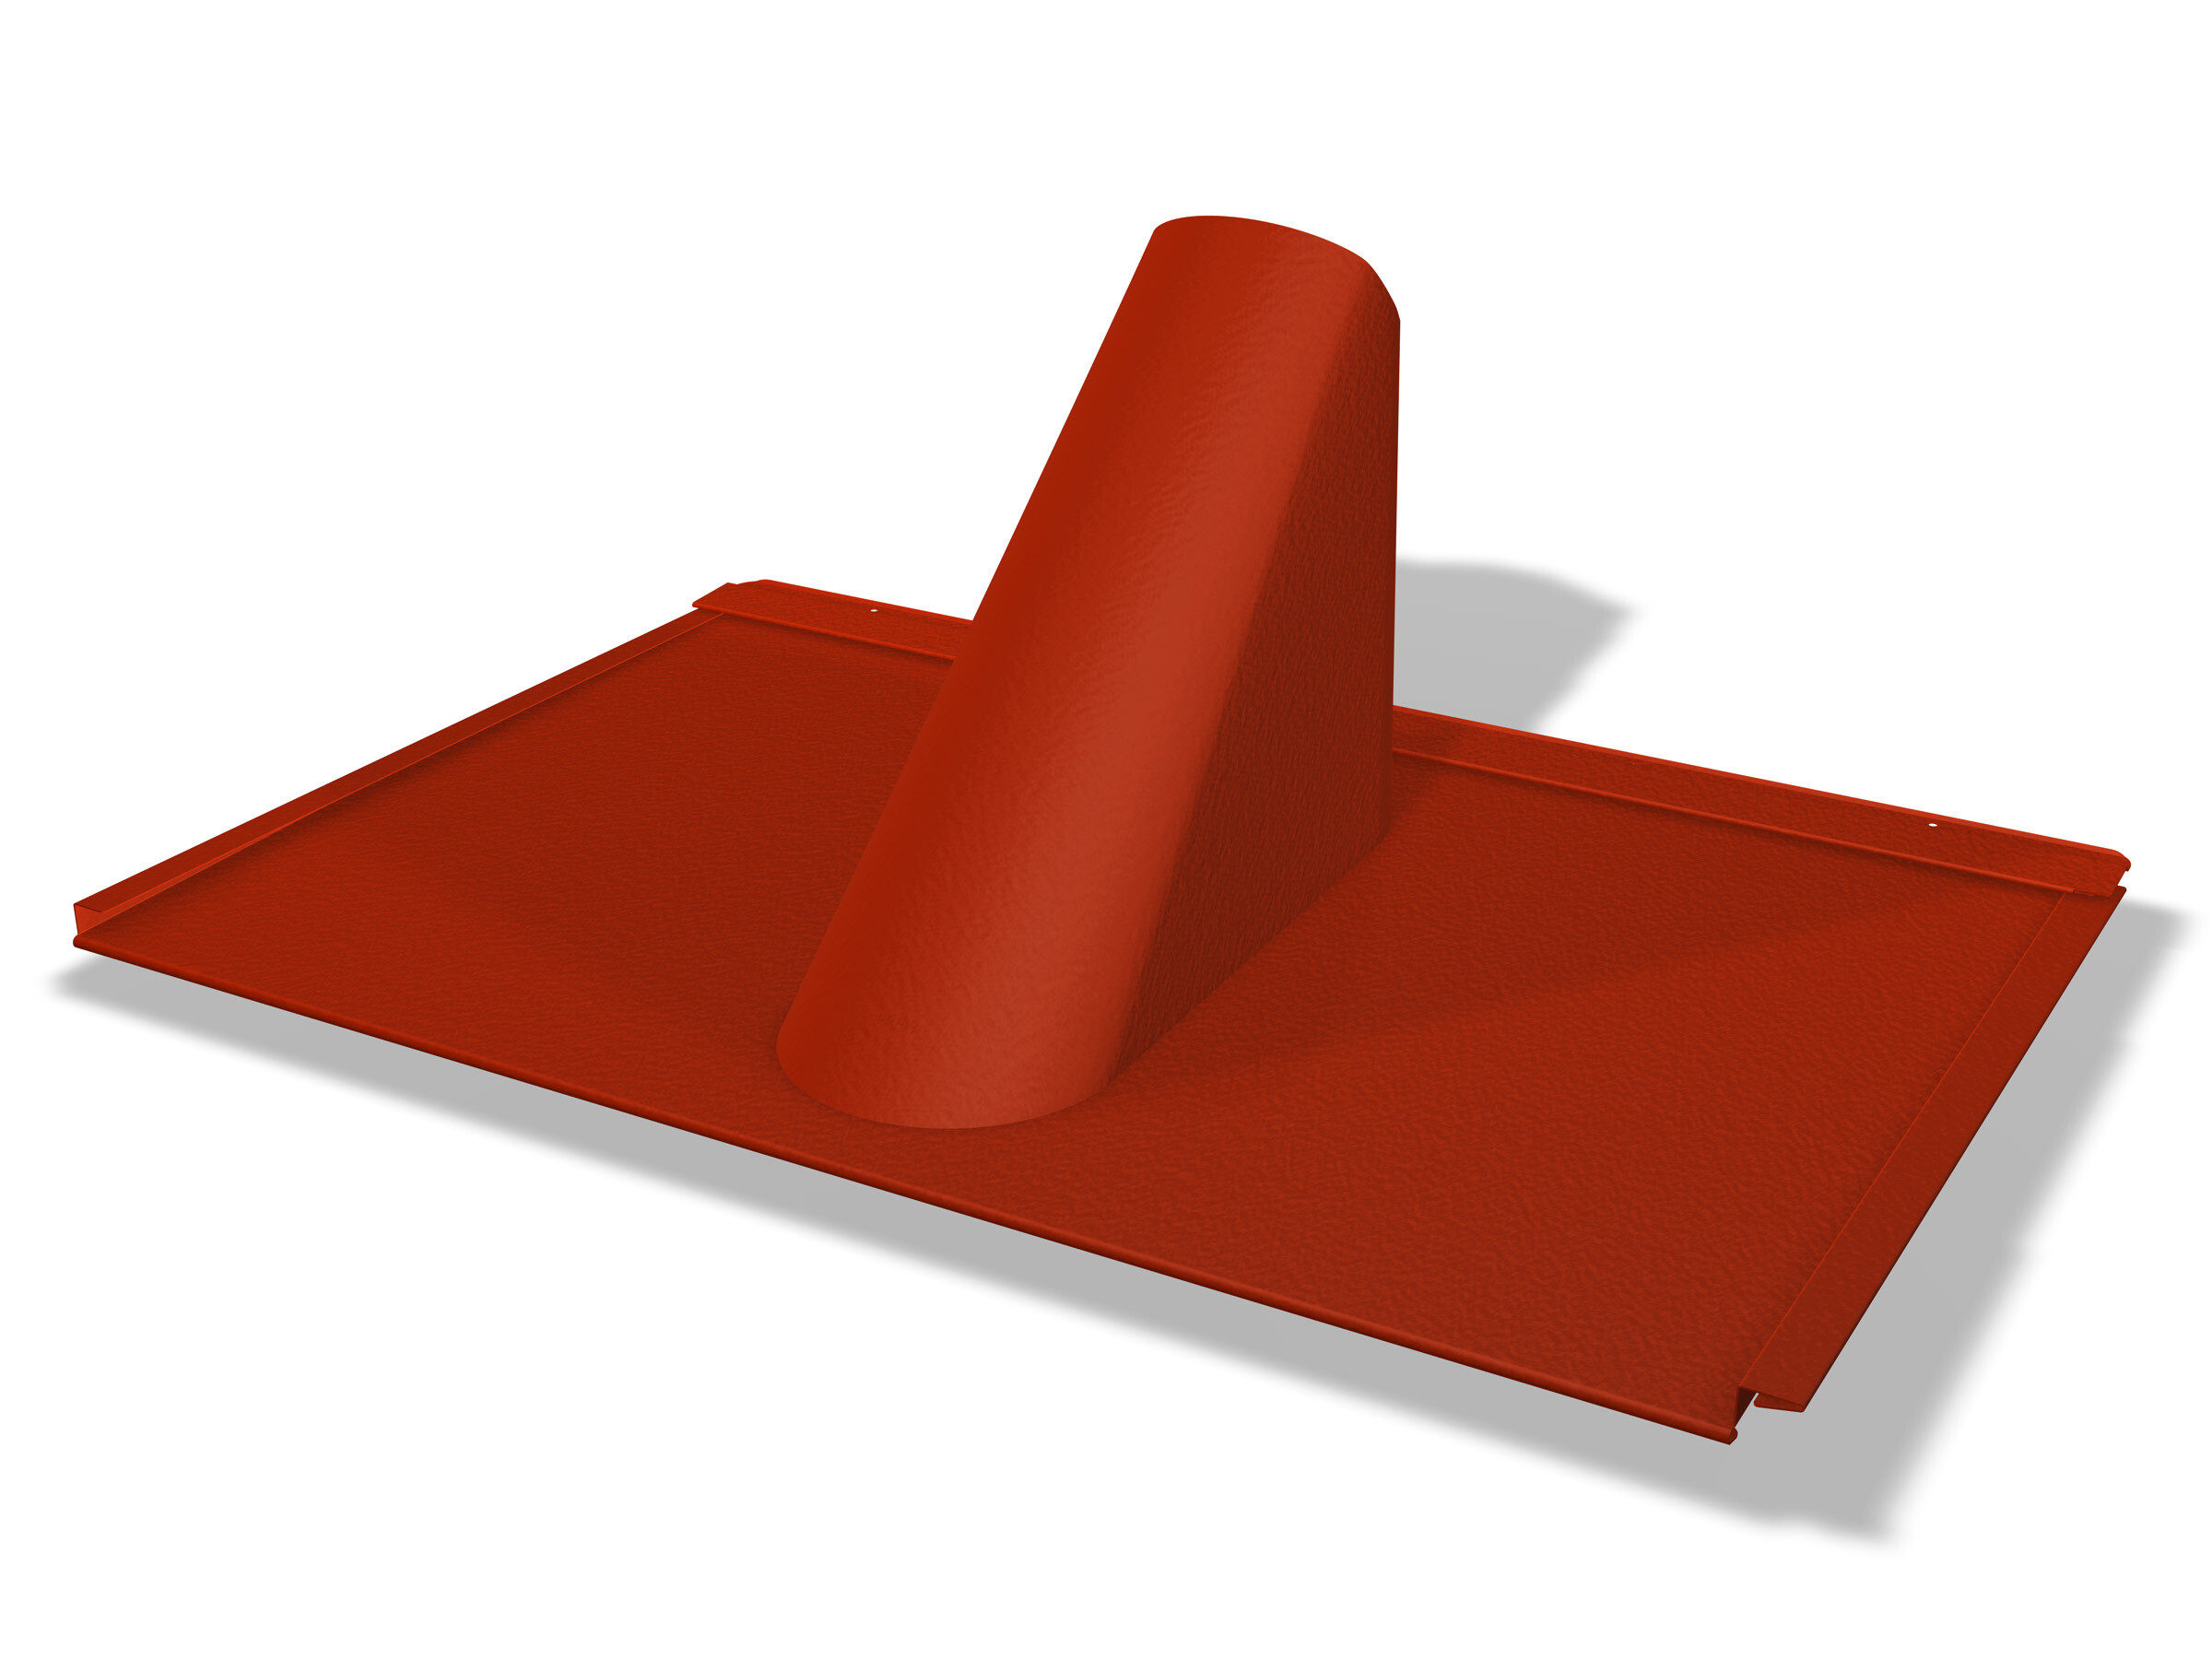 Dies ist ein Bild einer Einfassungsplatte für das PREFA Dachsystem, speziell für die PREFA Dachplatte R.16 mit stucco Profil. Die Platte ist in lebhaftem Rot gehalten und weist eine strukturierte Oberfläche auf.